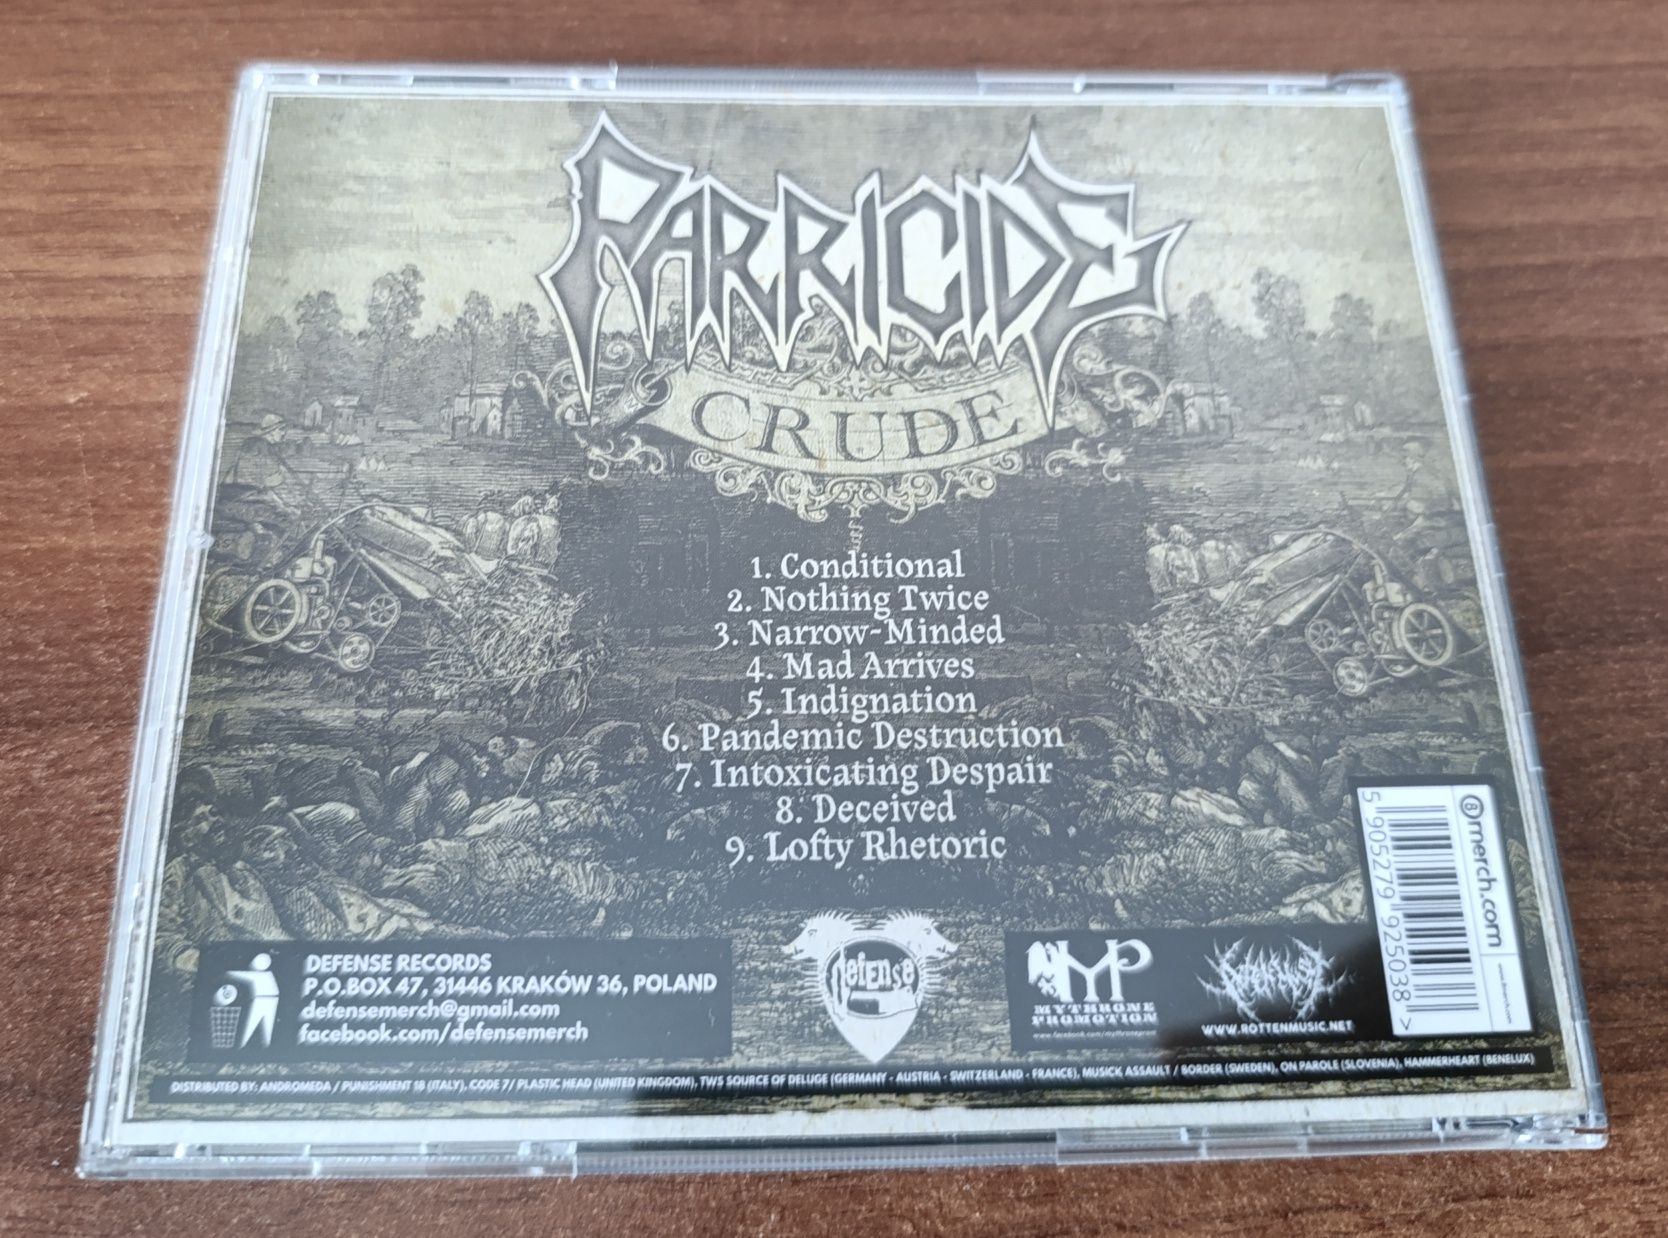 PARRICIDE - Crude - polski death metal cd